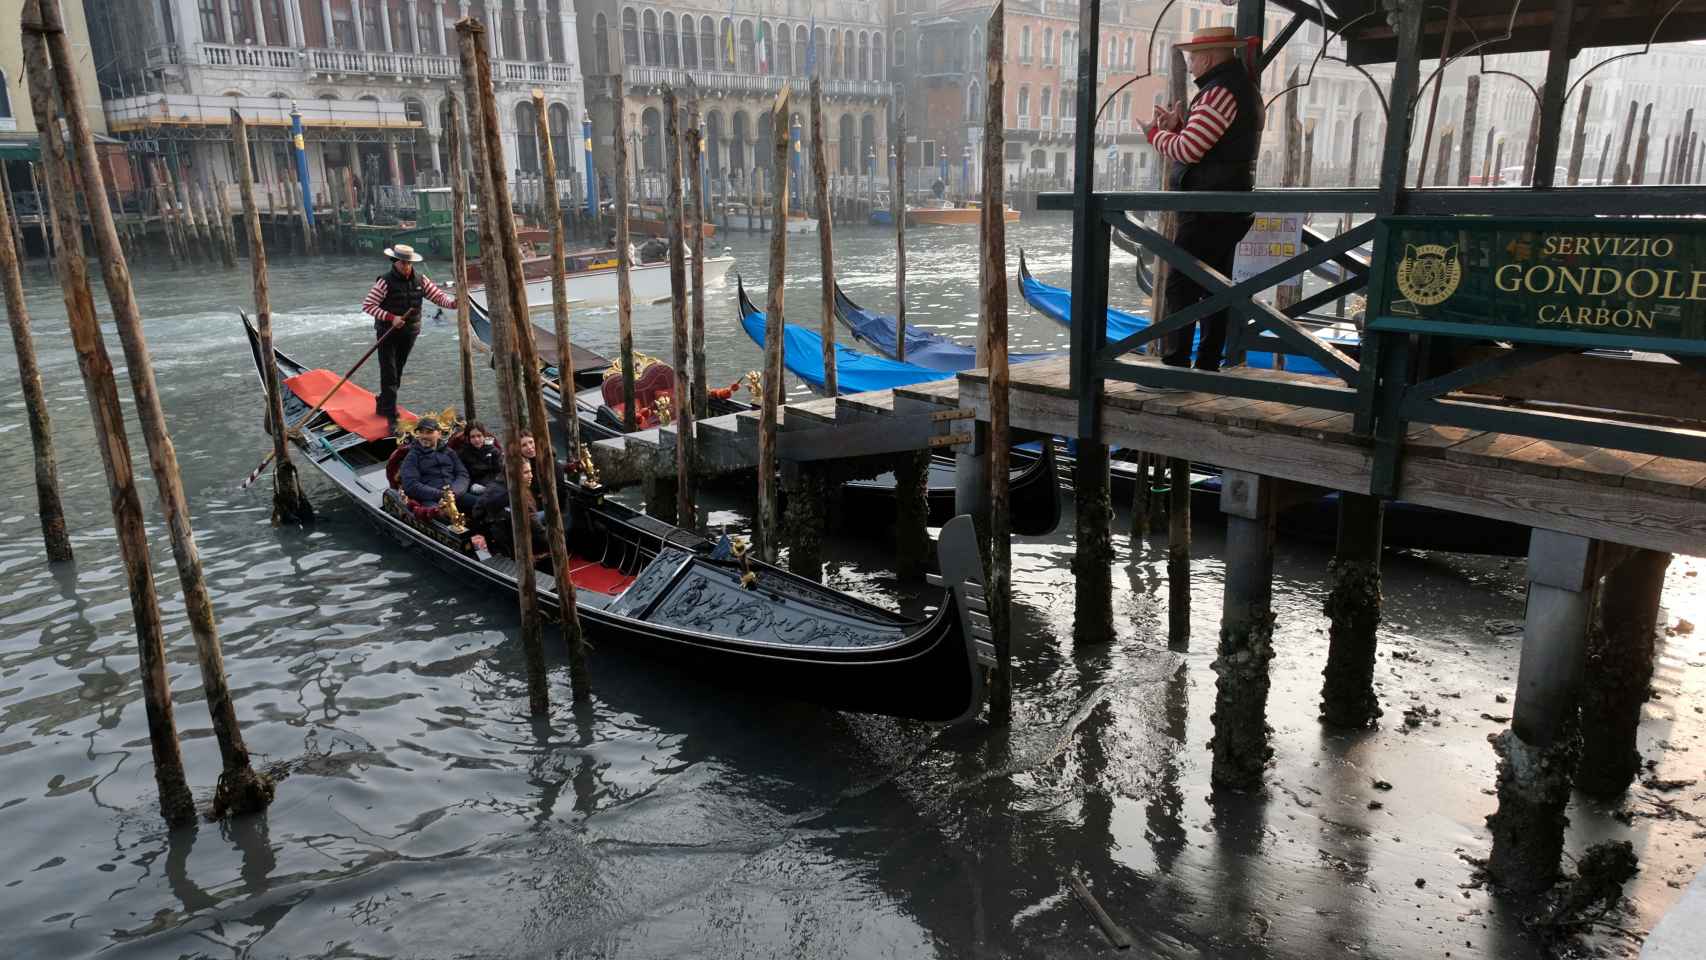 Gondoles sur le Grand Canal lors d'une forte marée basse dans la lagune de Venise.